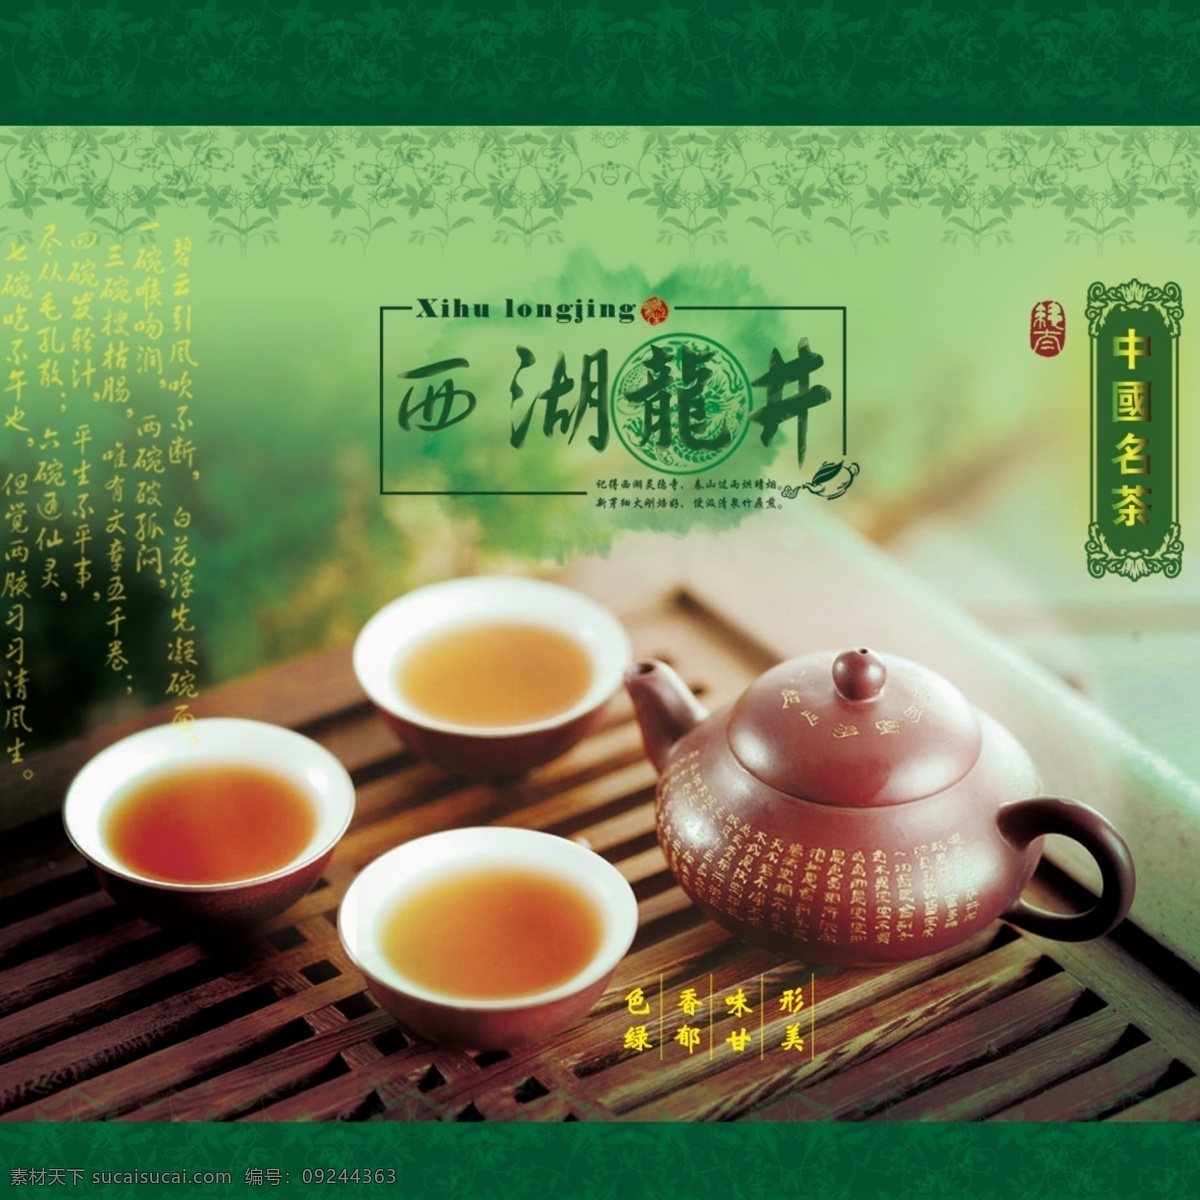 西湖 龙井 茶叶 正面 包装 背景 绿色 底纹设计 茶的特色